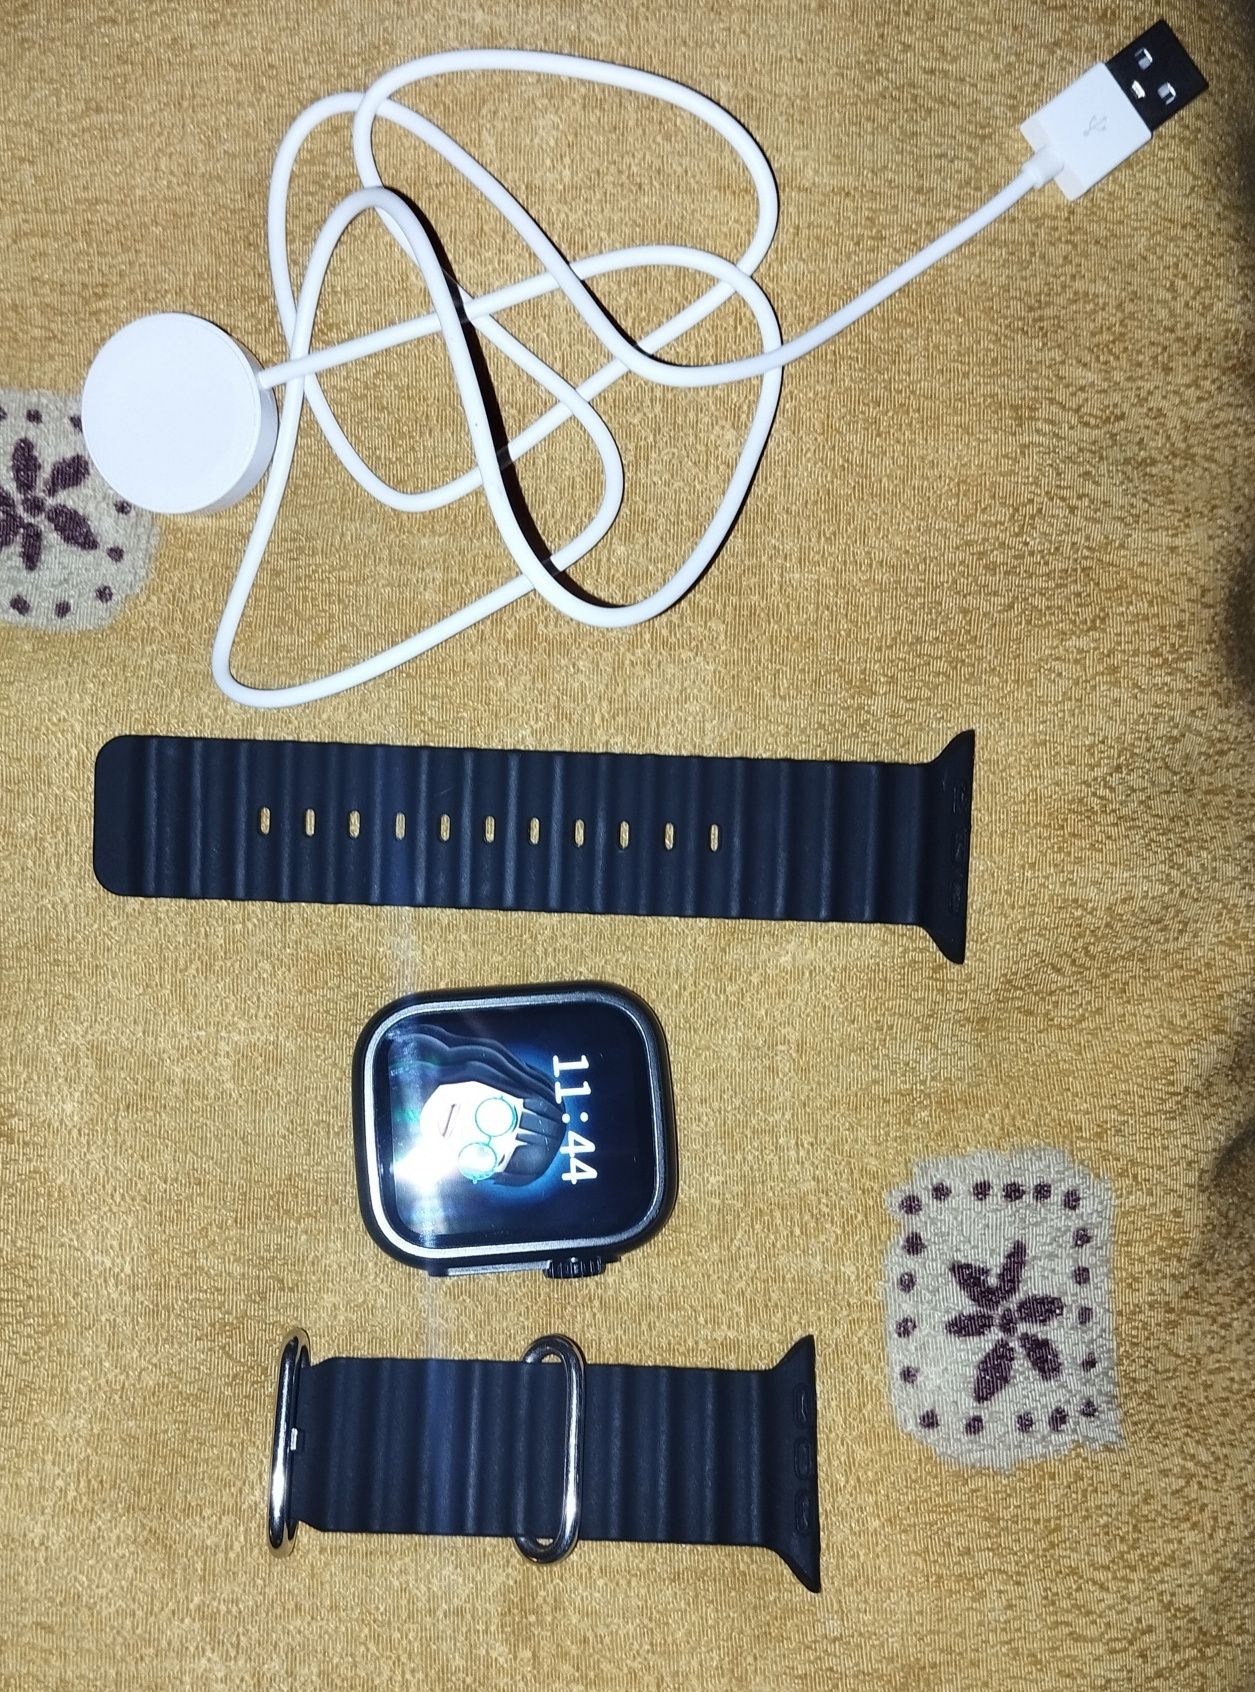 Vendo smartwatch T900 praticamente novo